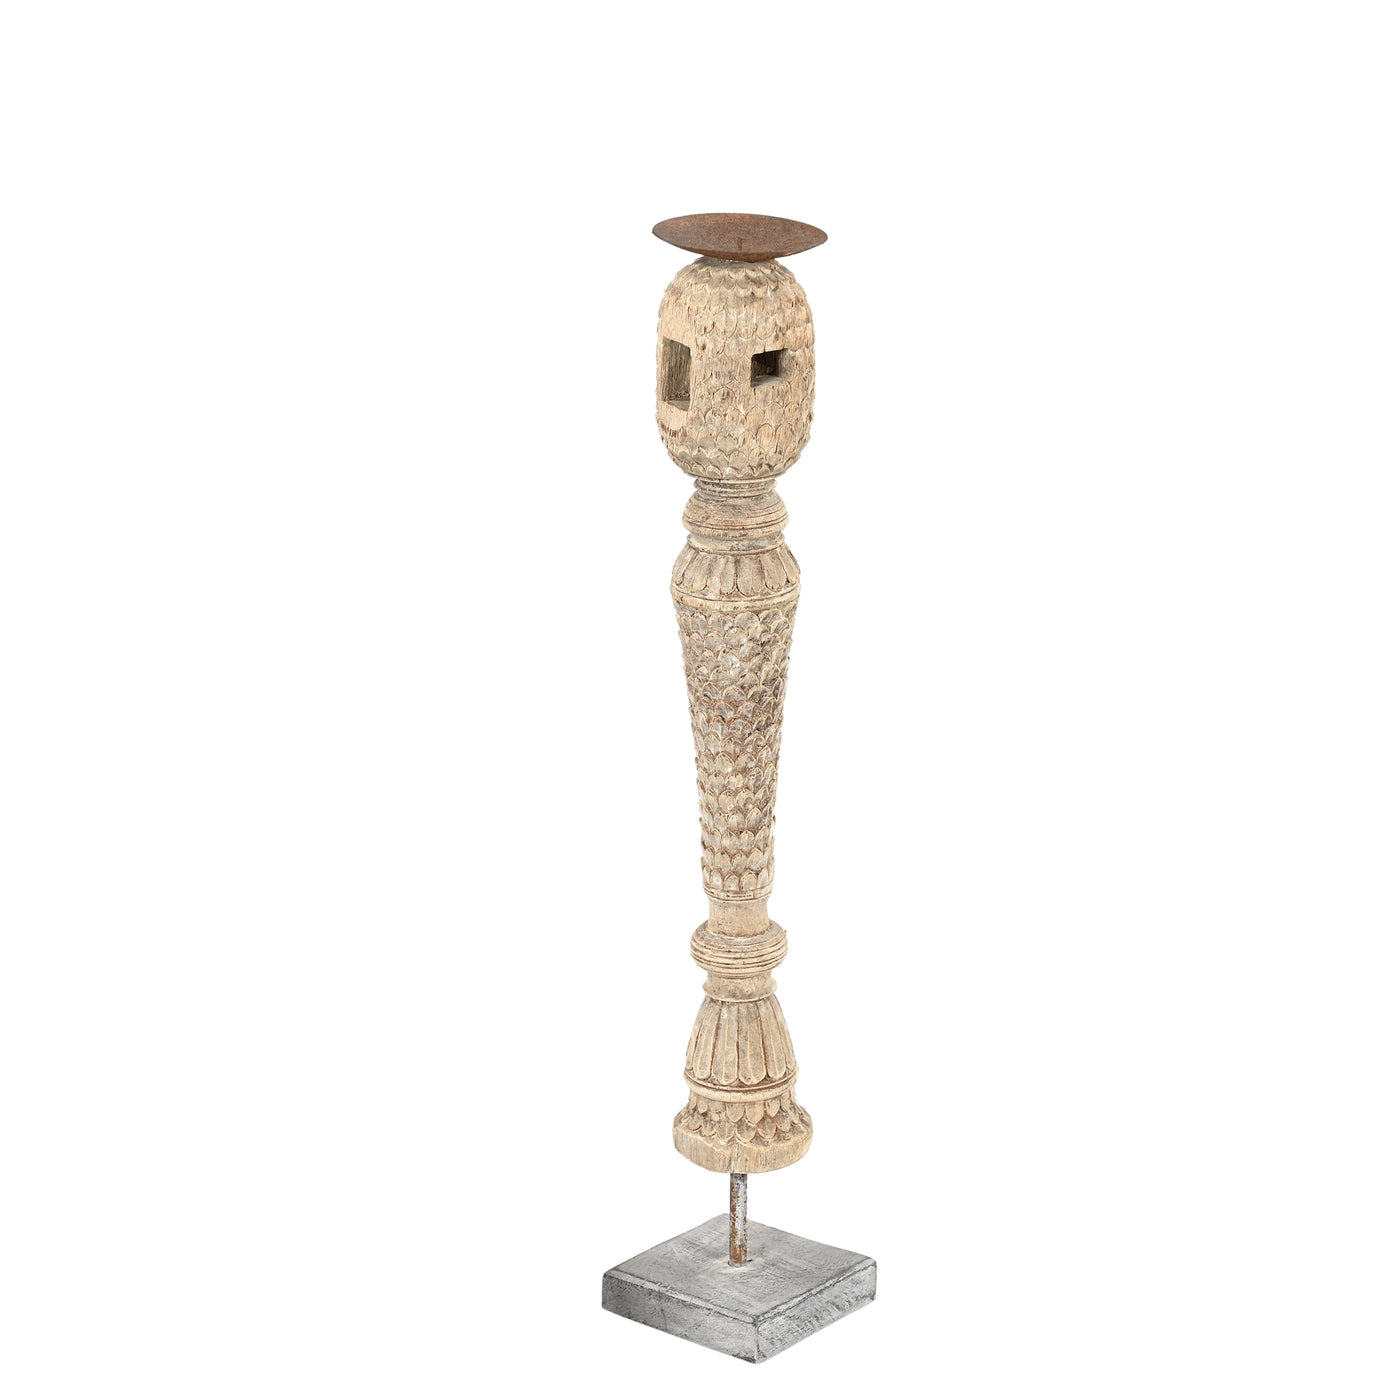 Rajvansh - old wooden candle holder n ° 14